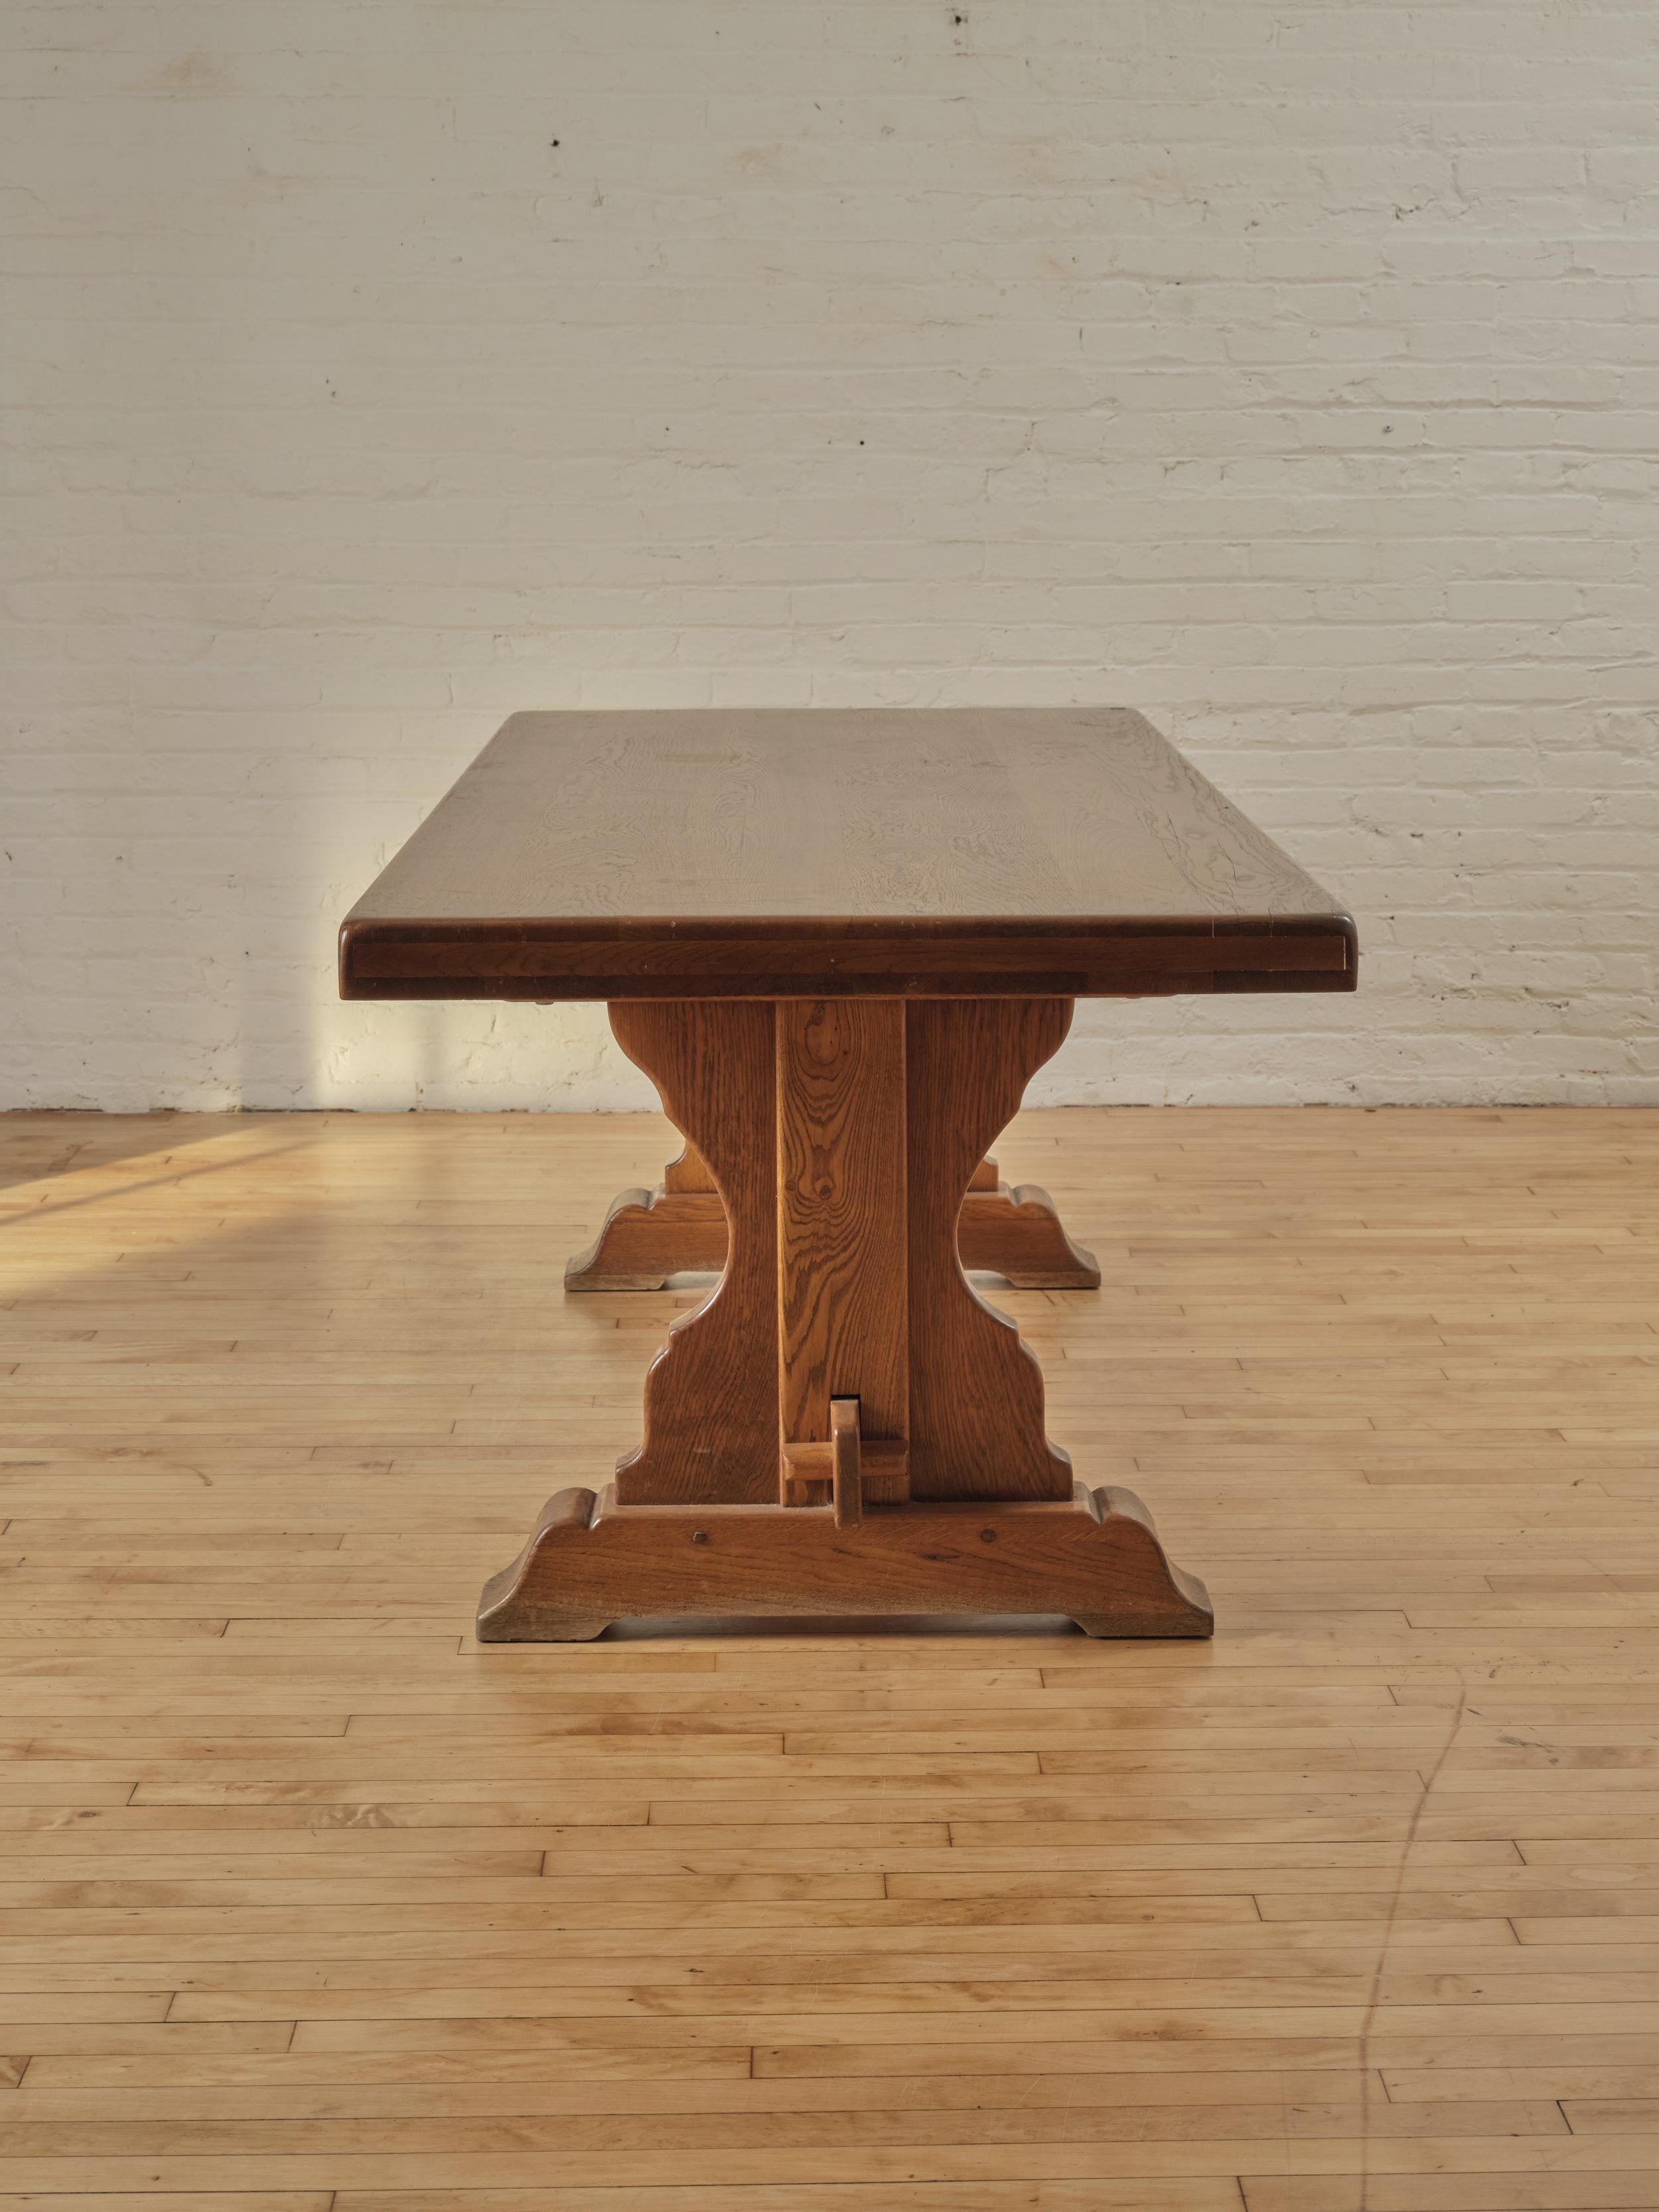 Table à tréteaux en chêne français avec un piètement à traverse et une construction à tenons et mortaises.

